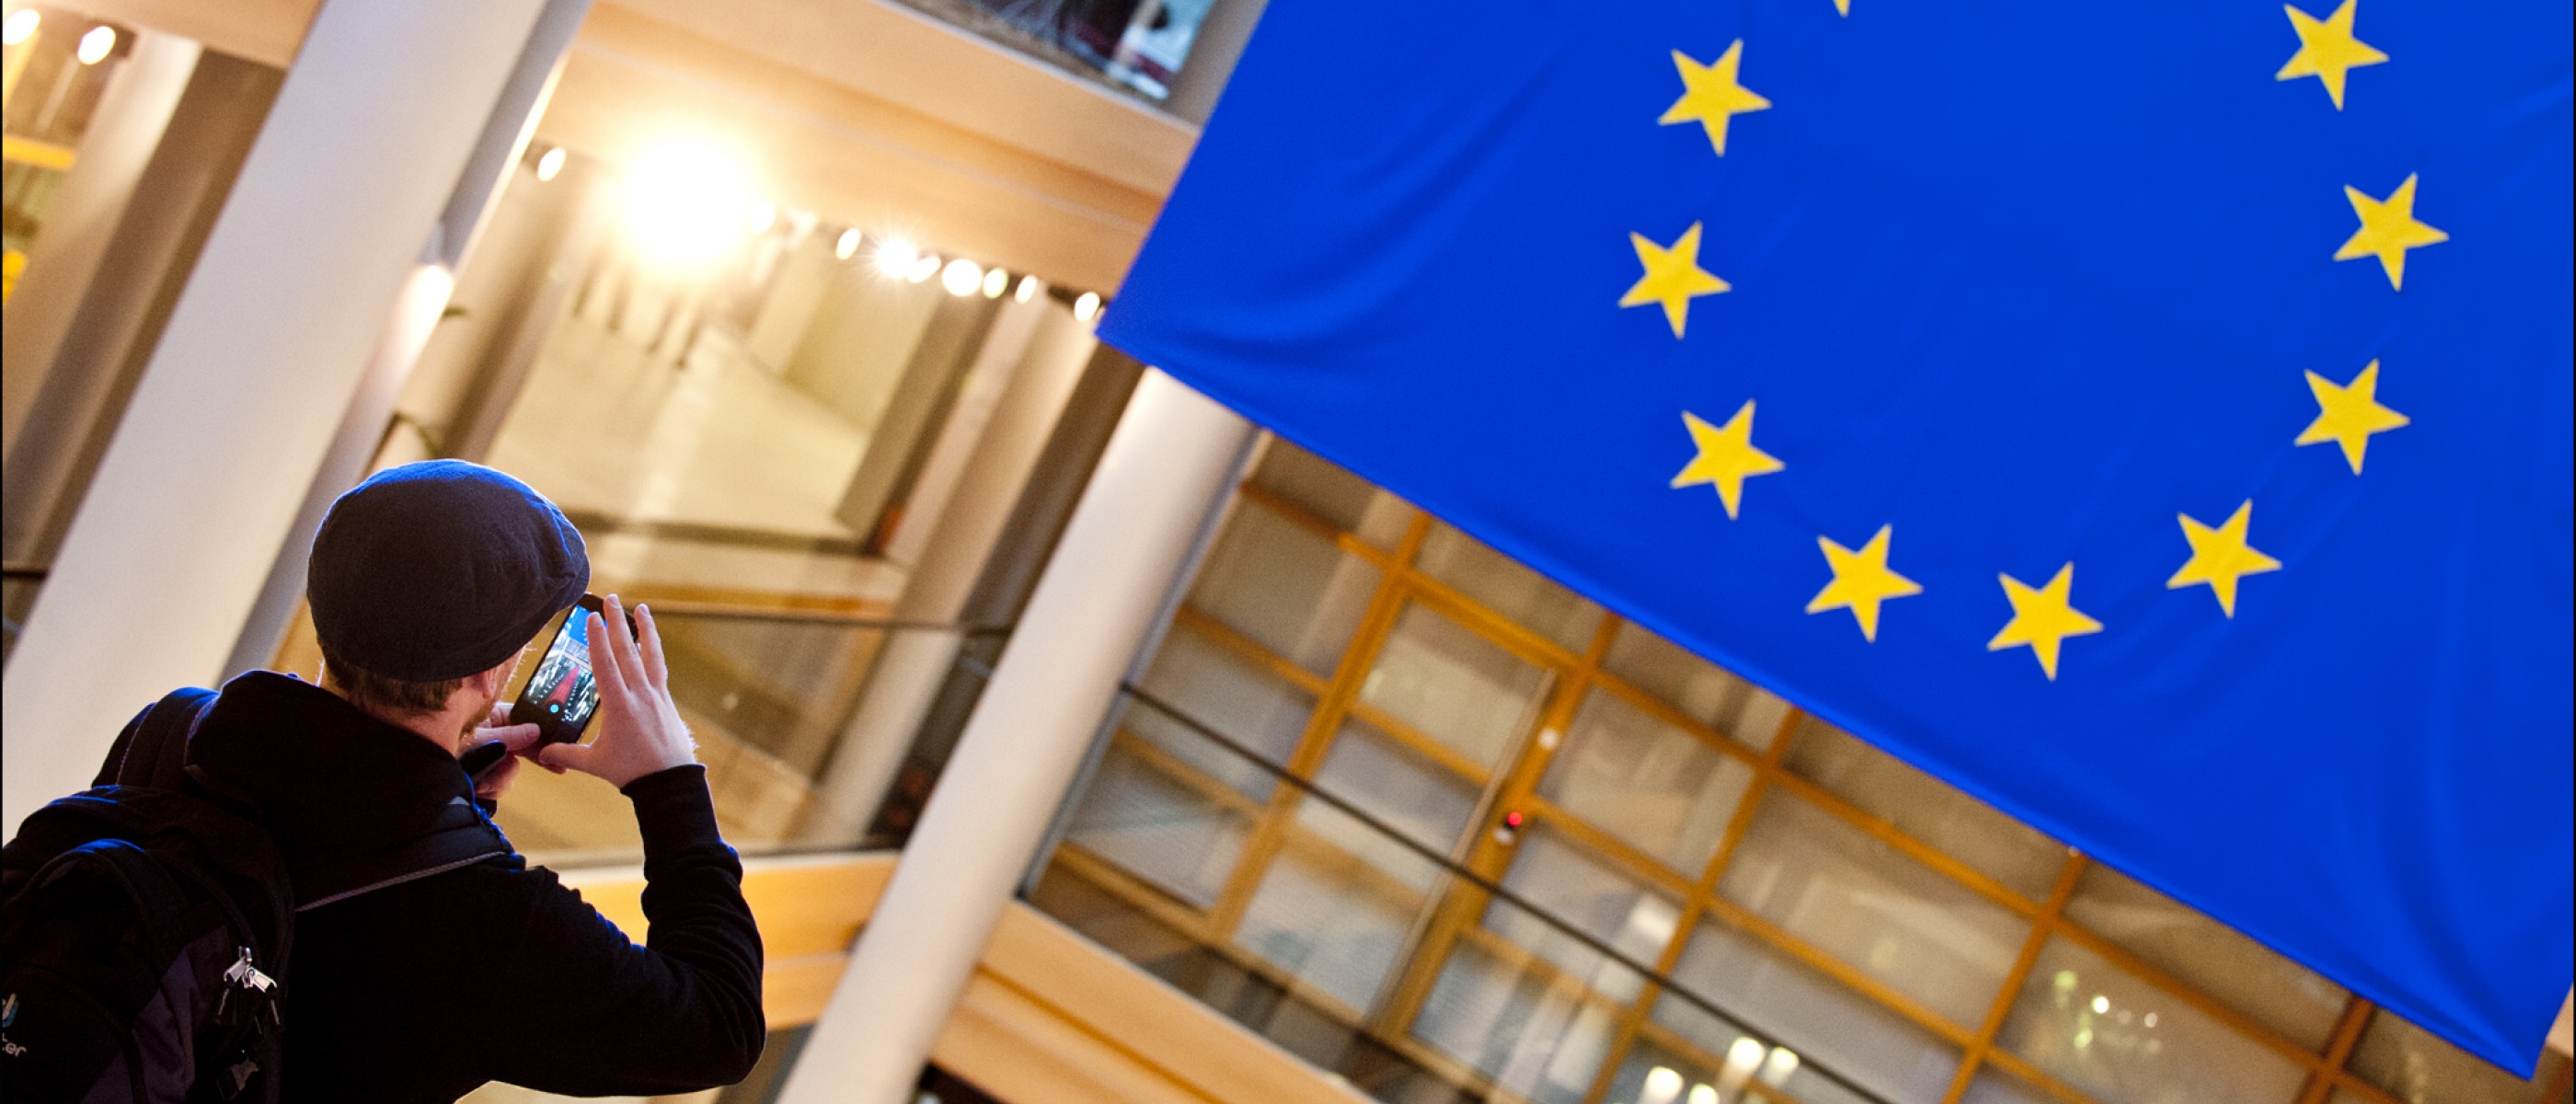 Un ragazzo col cellulare fotografa la bandiera europea.